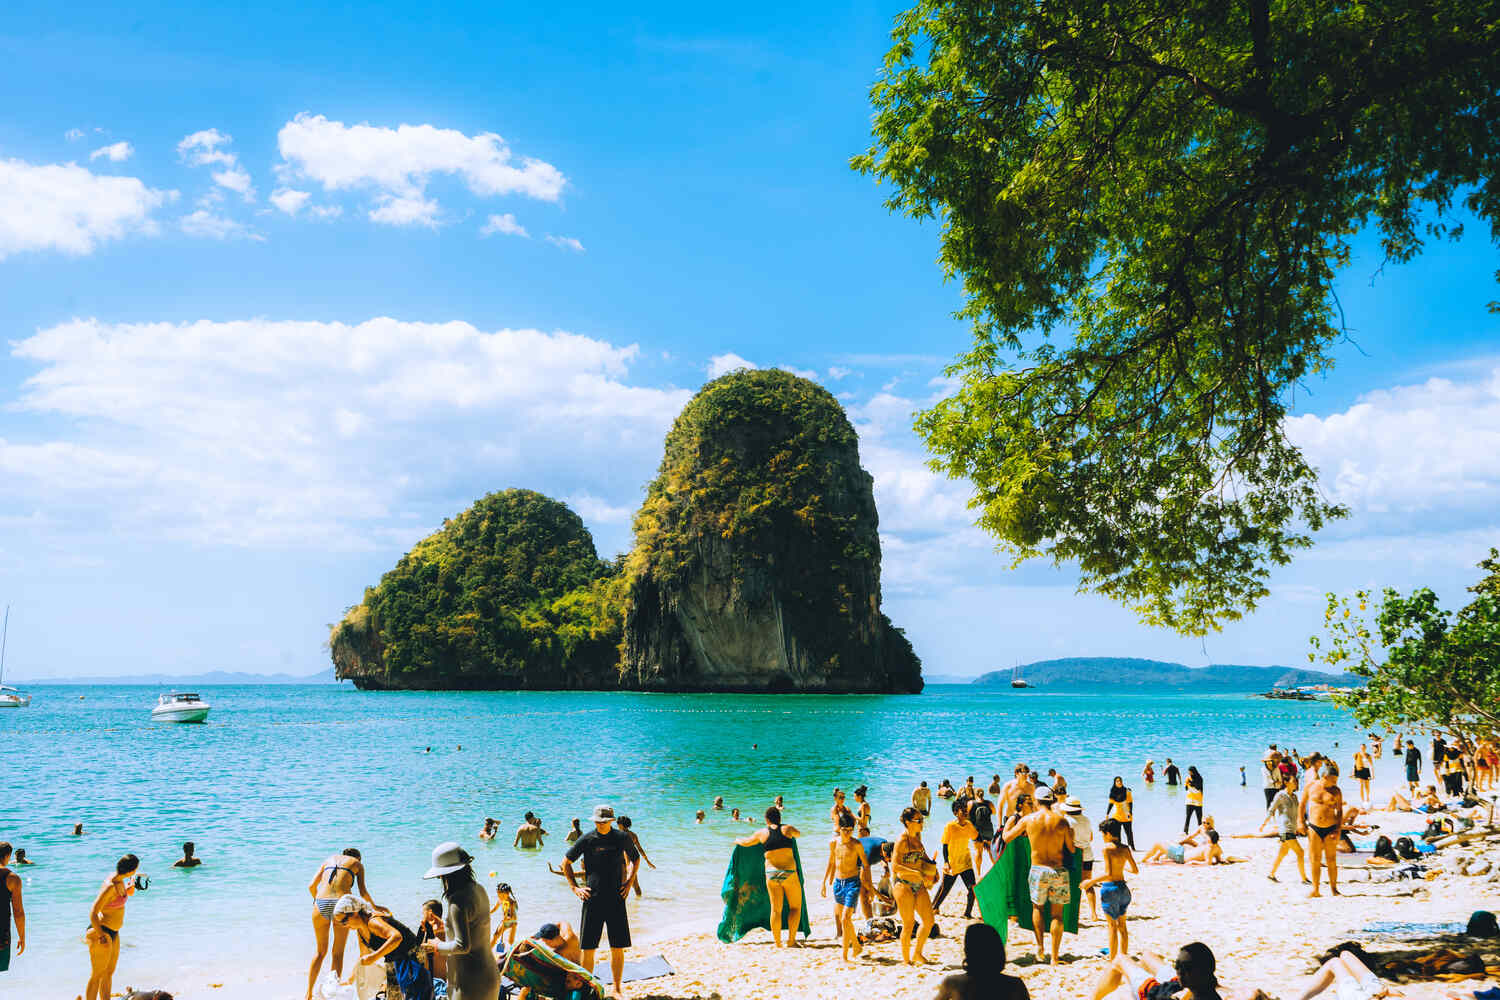 Tourist-crowds-in-Railay-Beach-Krabi-Thailand